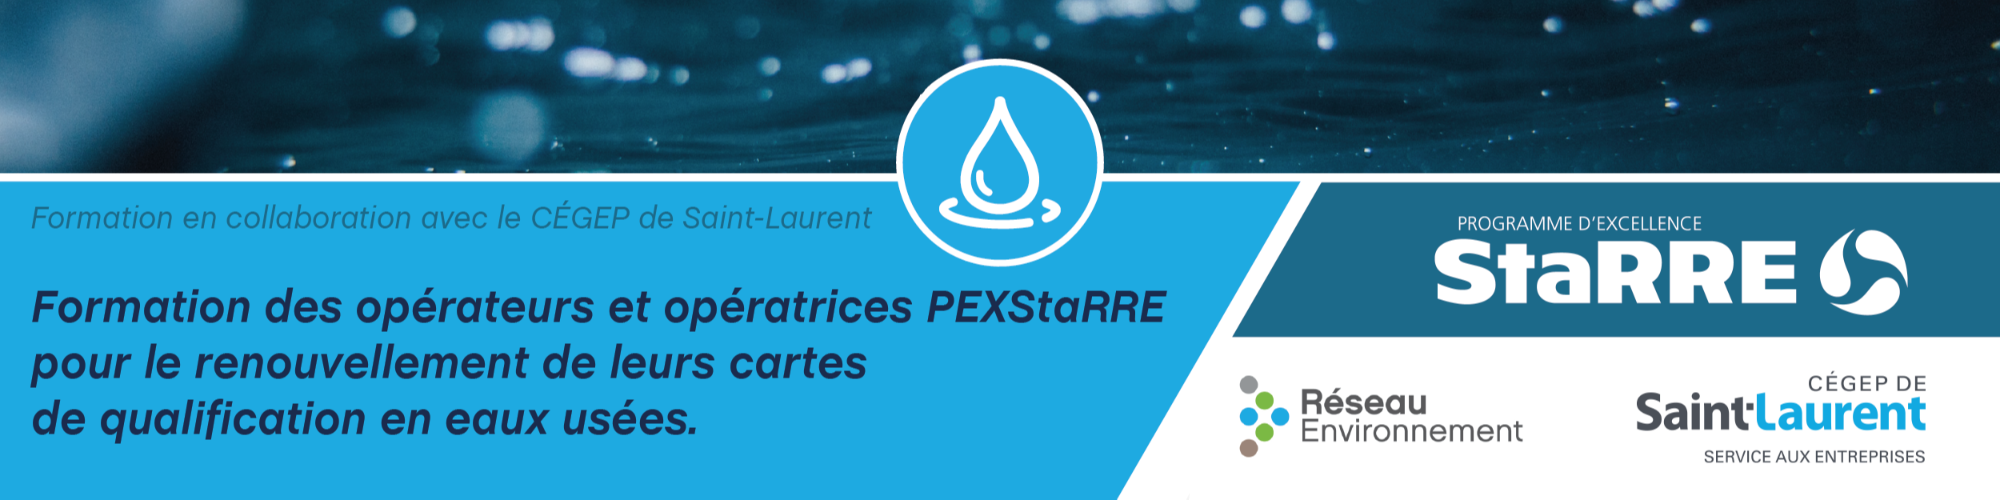 Formation des opératrices et opérateurs PEXStarre pour le renouvellement de leurs cartes de qualification en eaux usées - 1ère cohorte